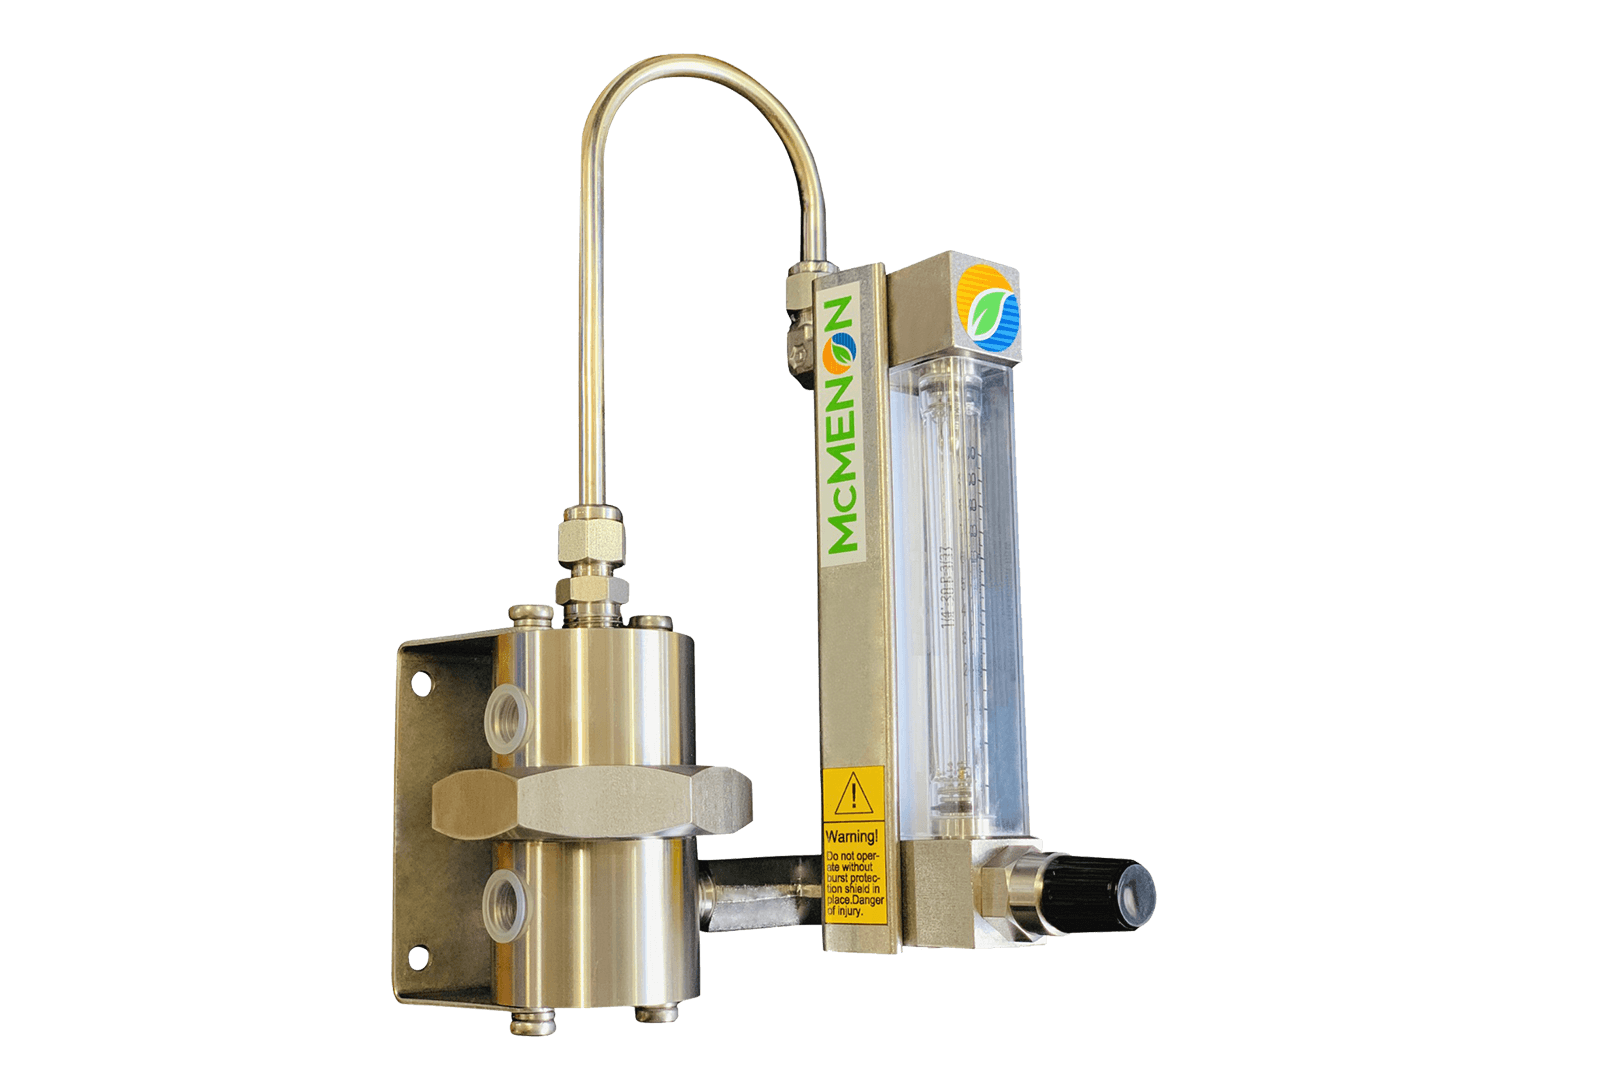 Enkelt snap-in variabelt area (VA) rotameter med regulator for jevn strøm av ulike væsker eller gasser